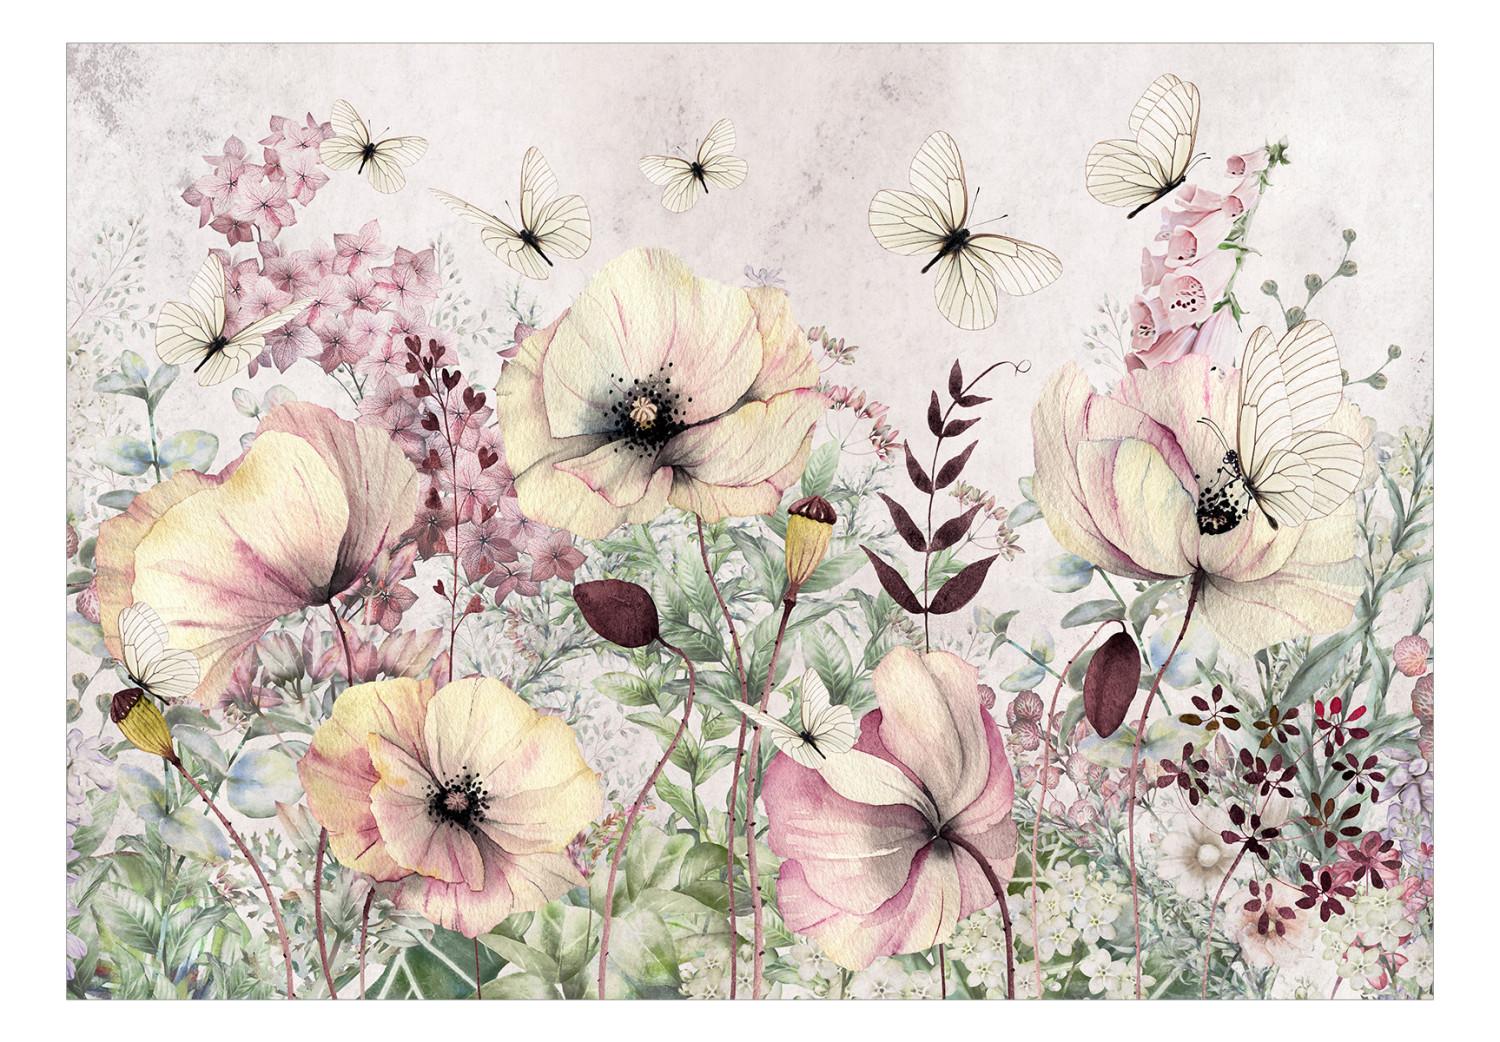 Fotomural Pradera encantada - paisaje con flores y mariposas en fondo claro